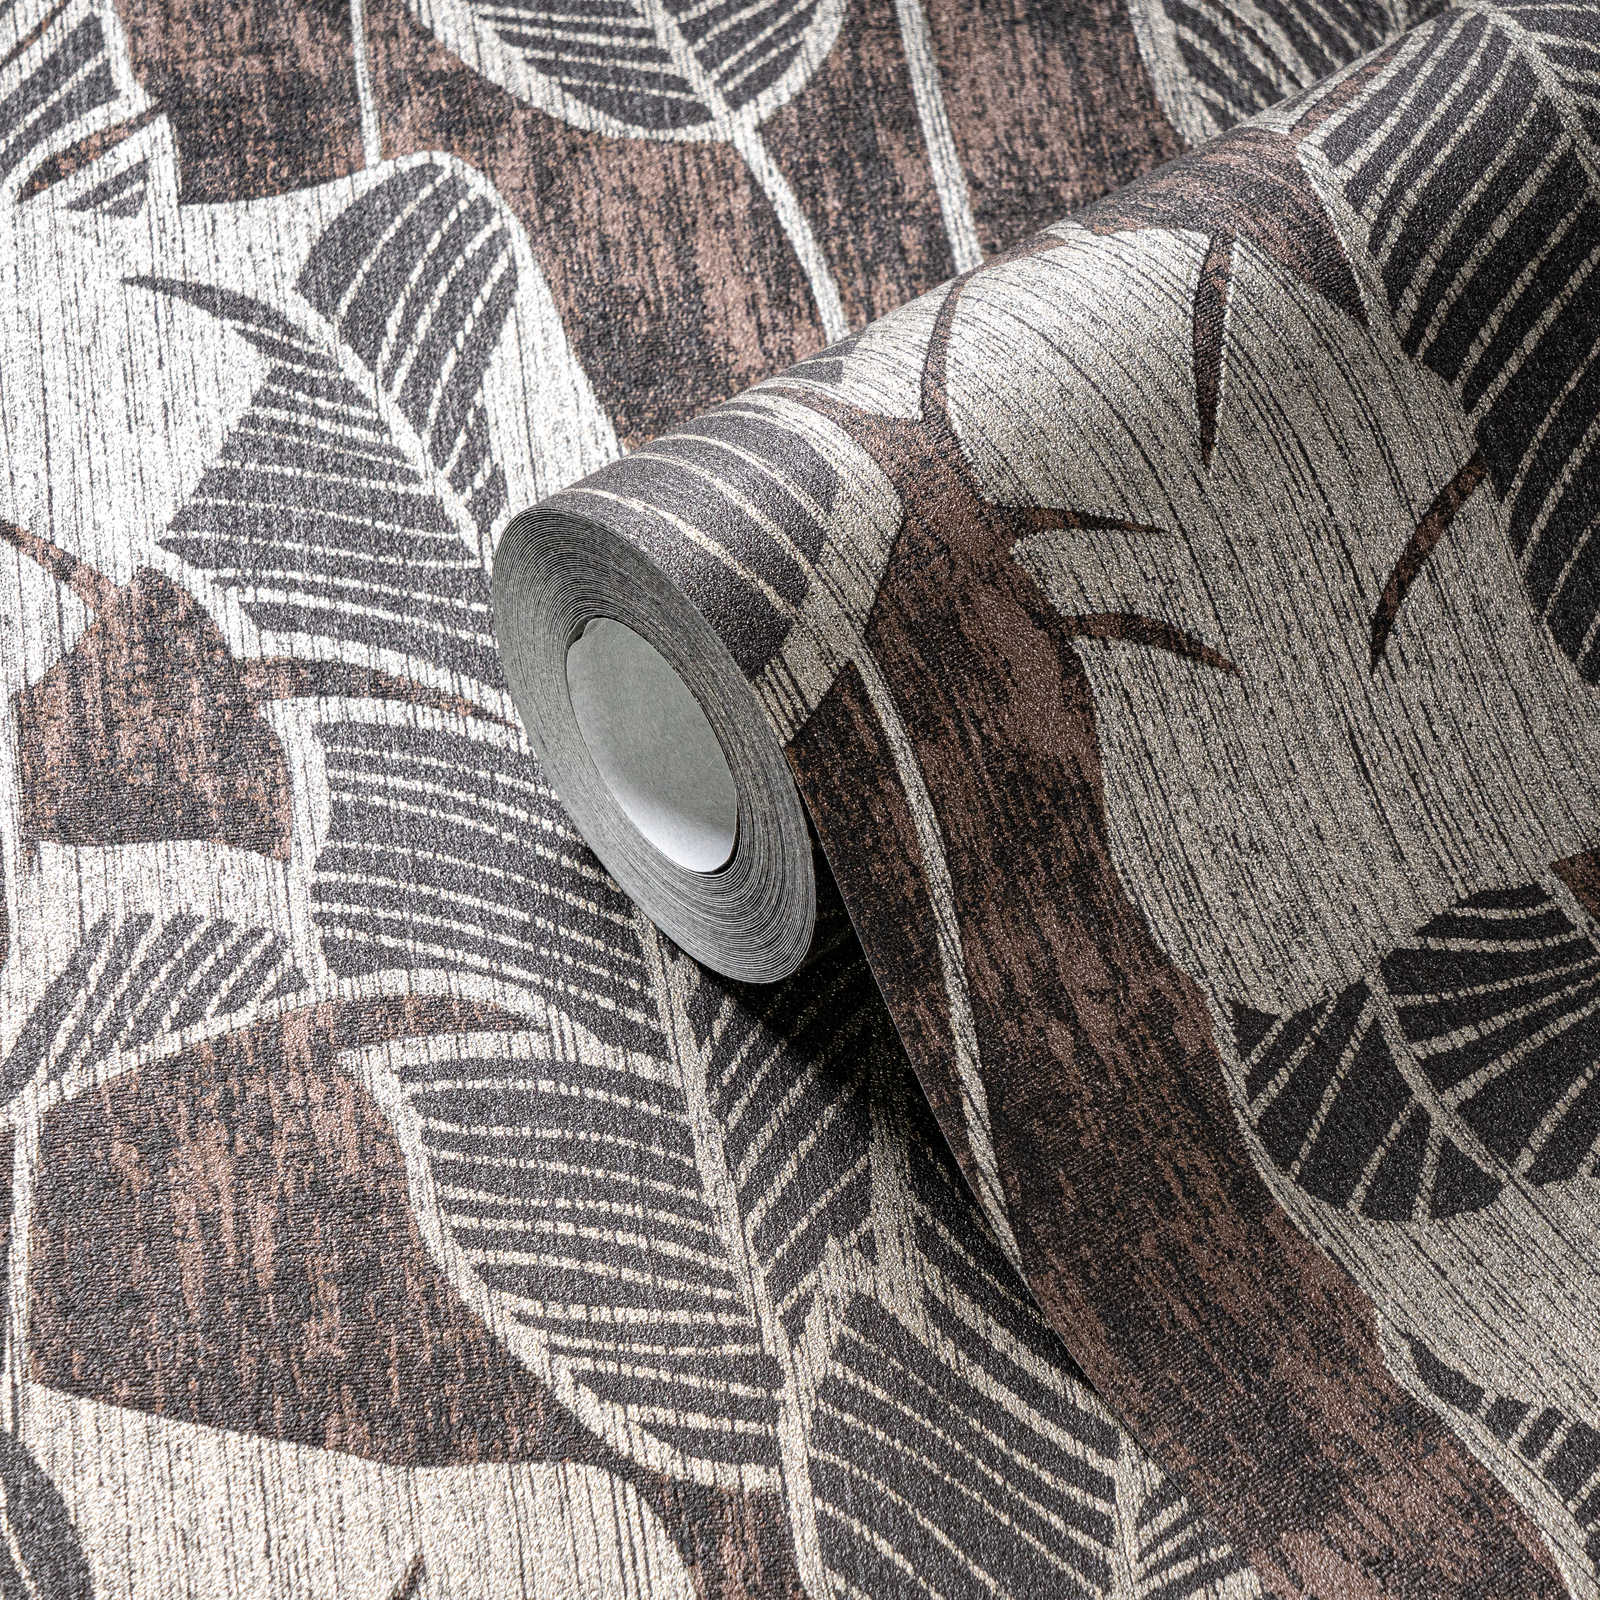             Bloemrijkpatroon behang met jungle design - bruin, grijs, zwart
        